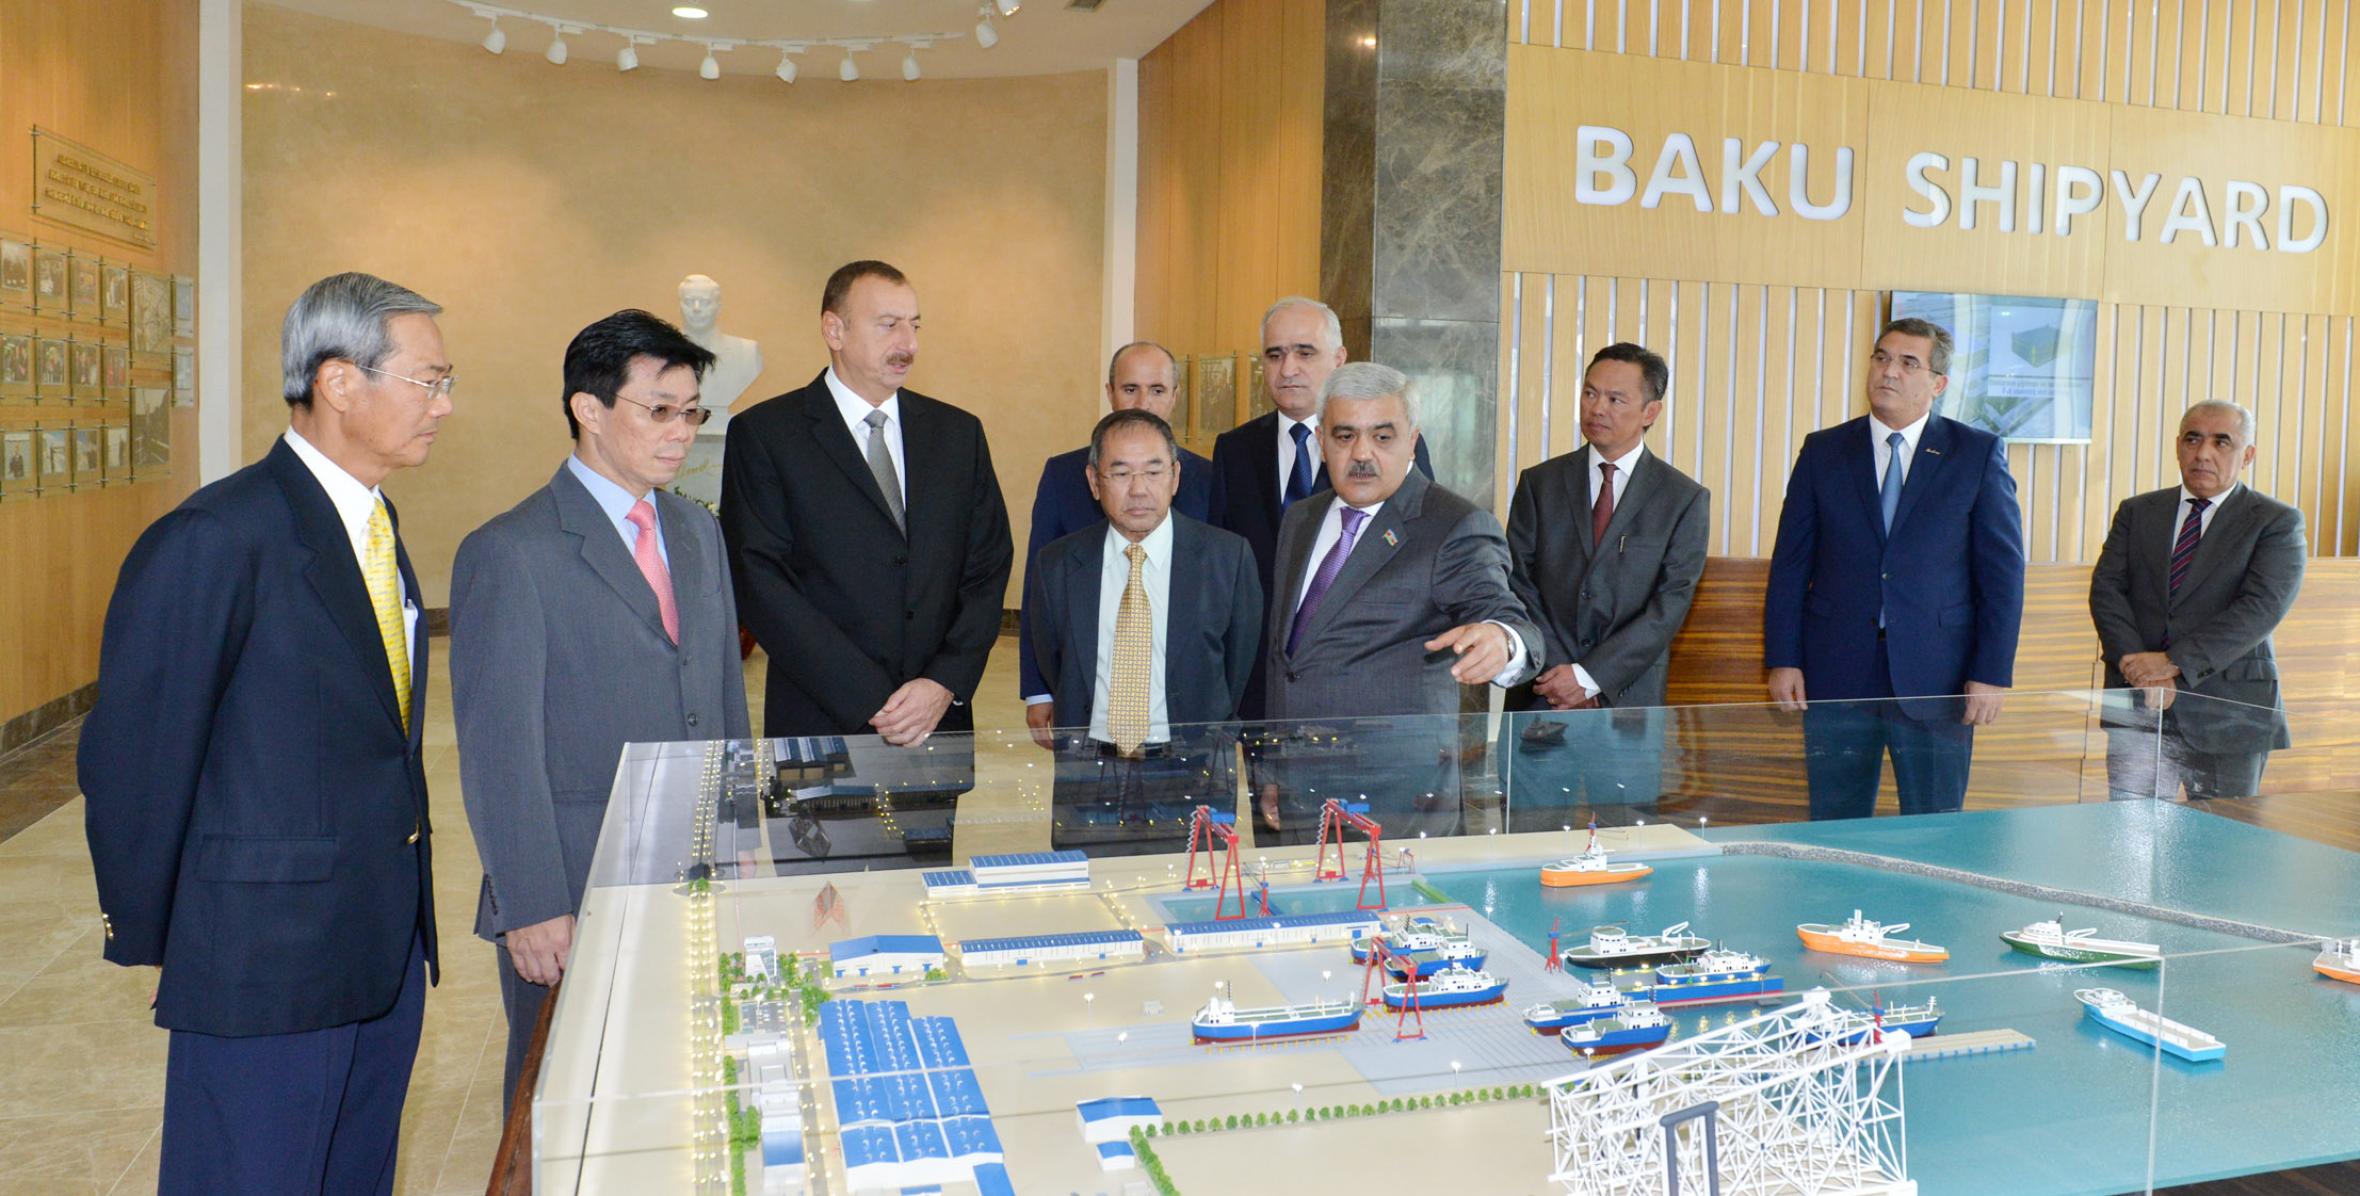 Ильхам Алиев принял участие в церемонии открытия Бакинского судостроительного завода